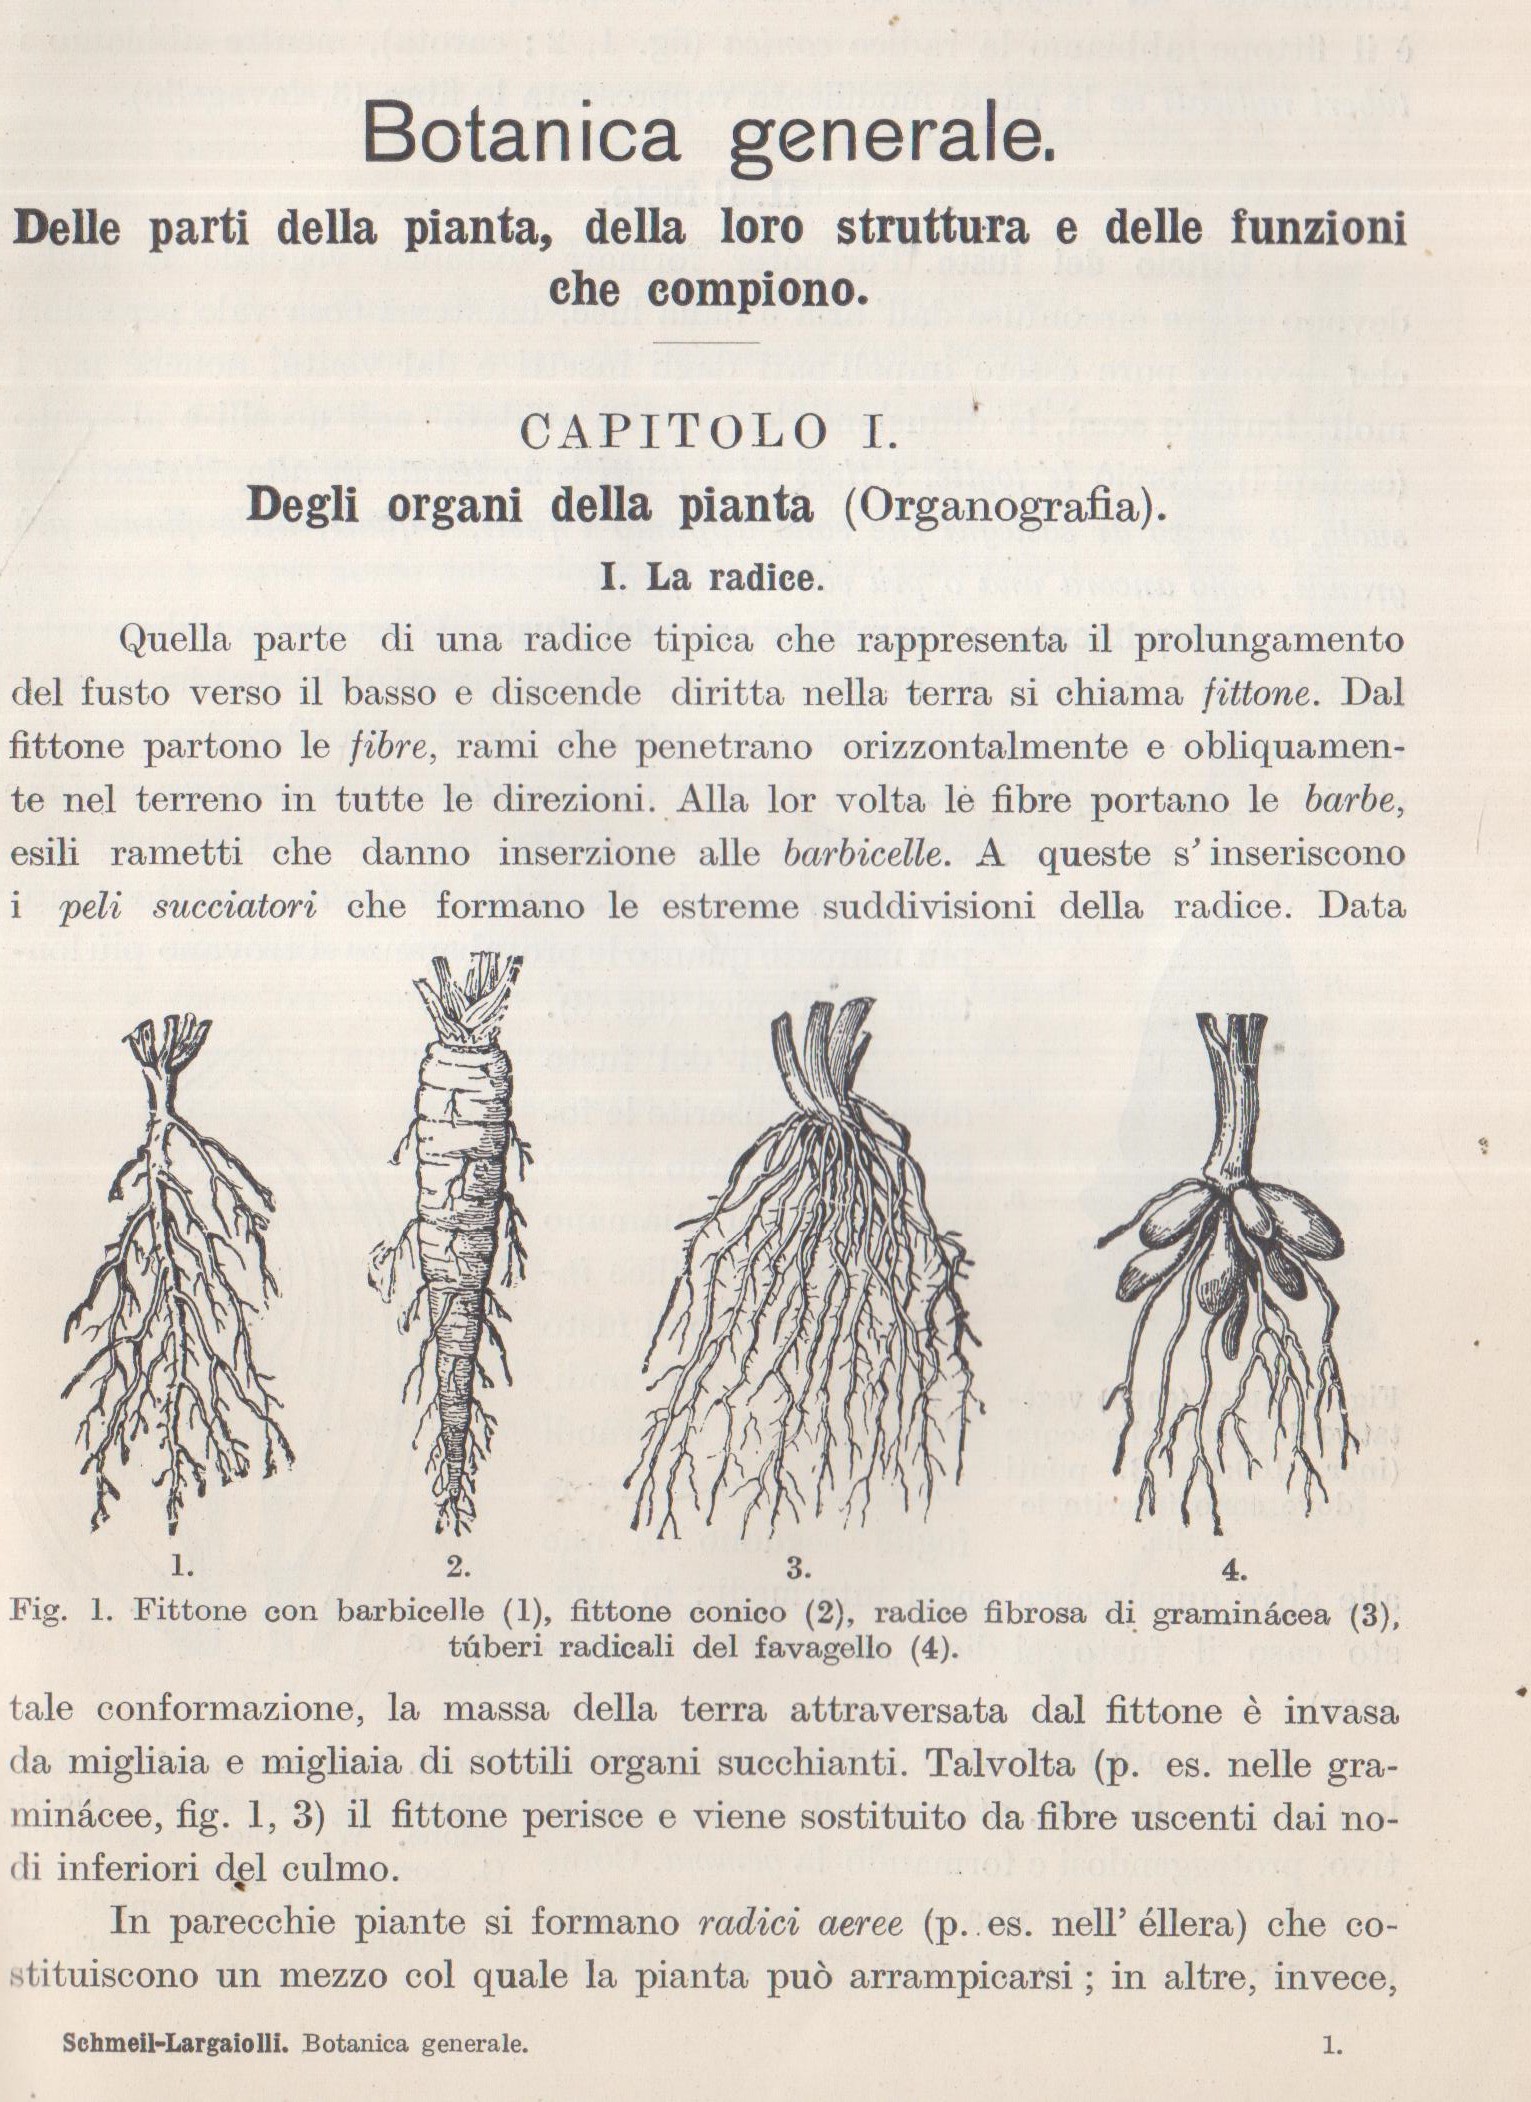 Trattato di Botanica “Botanica generale. Delle parti della pianta, della loro struttura e delle funzioni che compiono”.